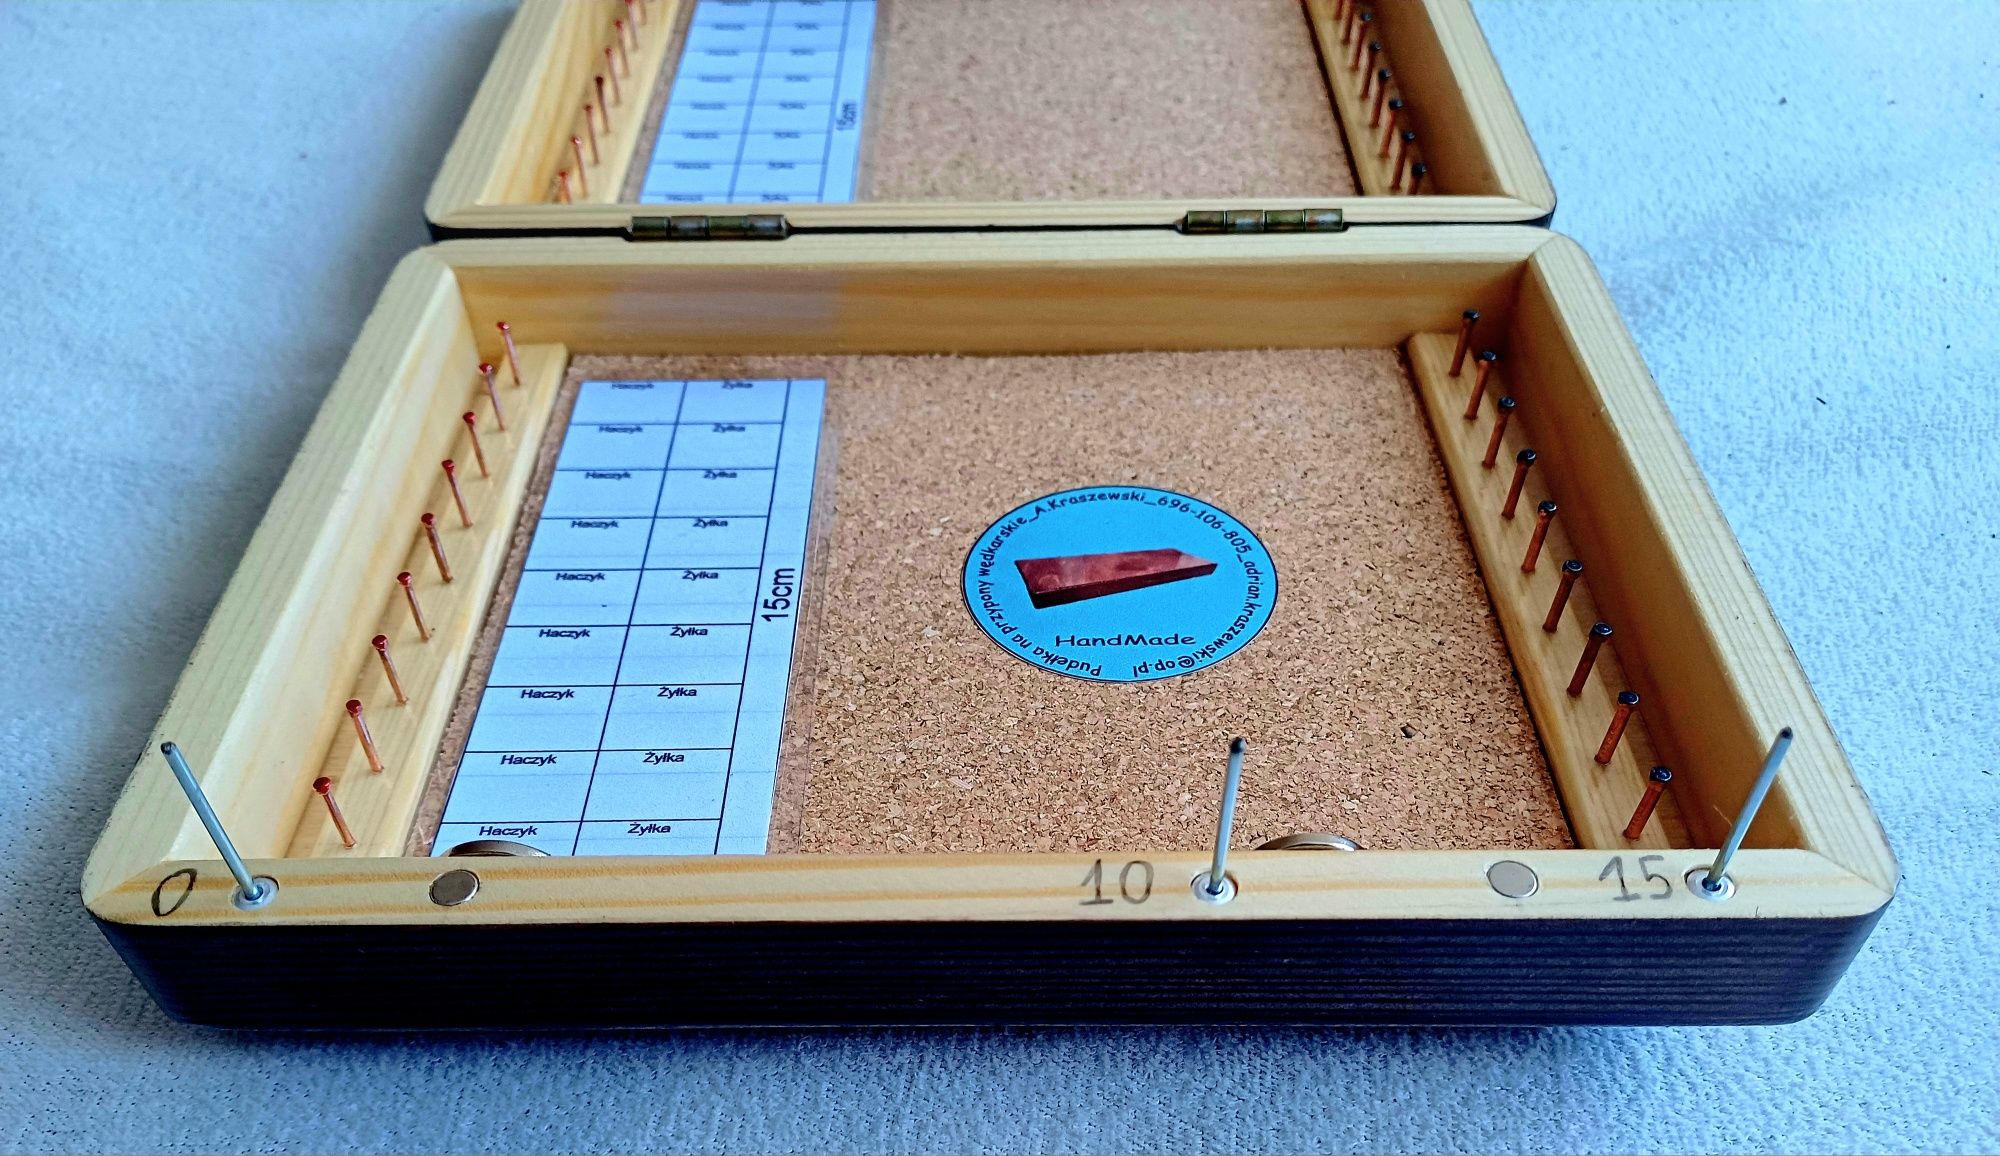 Pudełko piórnik na przypony 15 cm